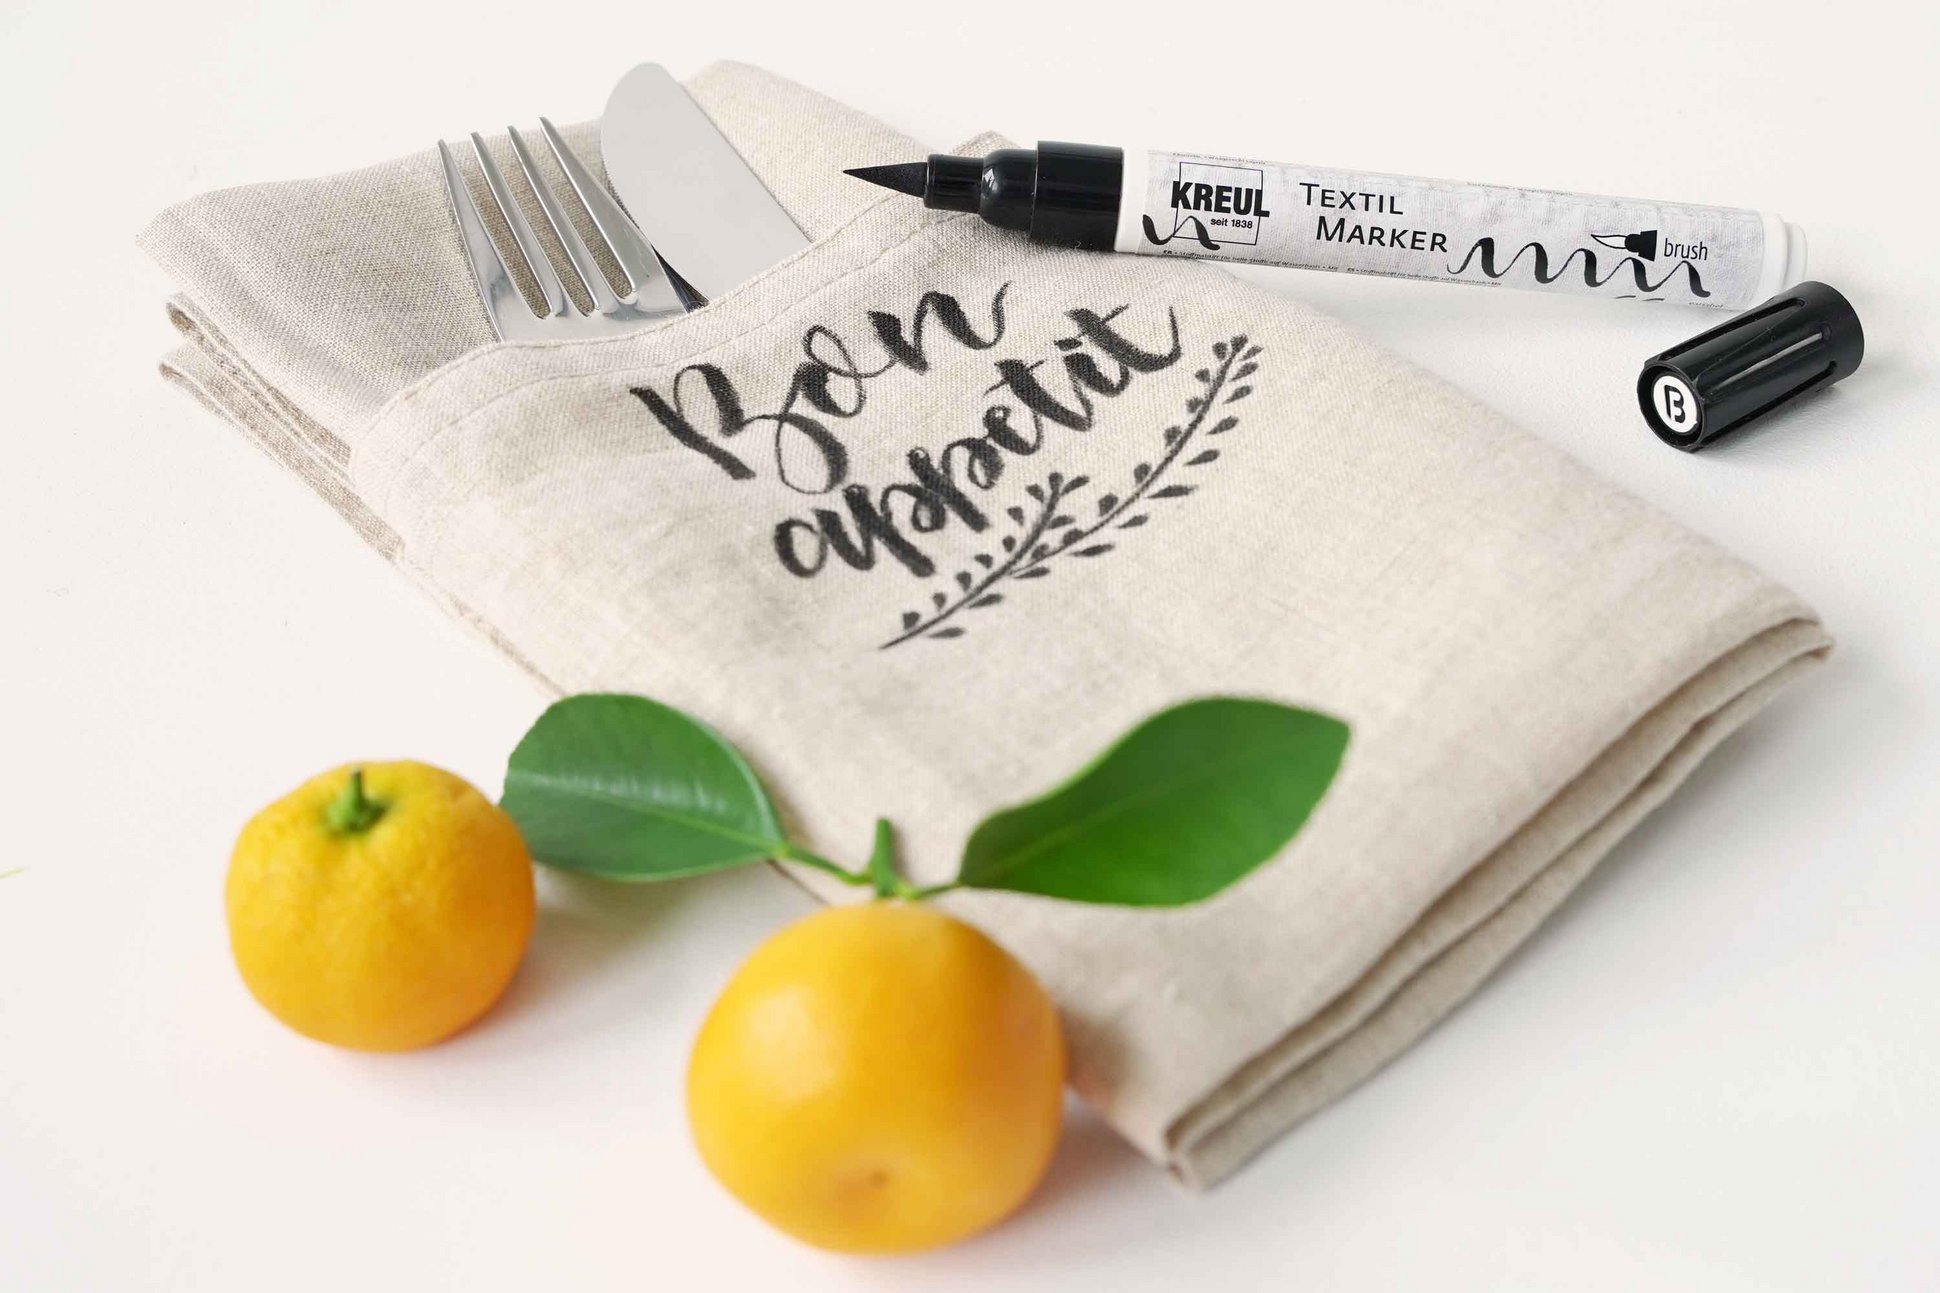 Stoffserviette bemalt mit Schriftzug Bon Appetit KREUL Textil Marker und Orangen daneben